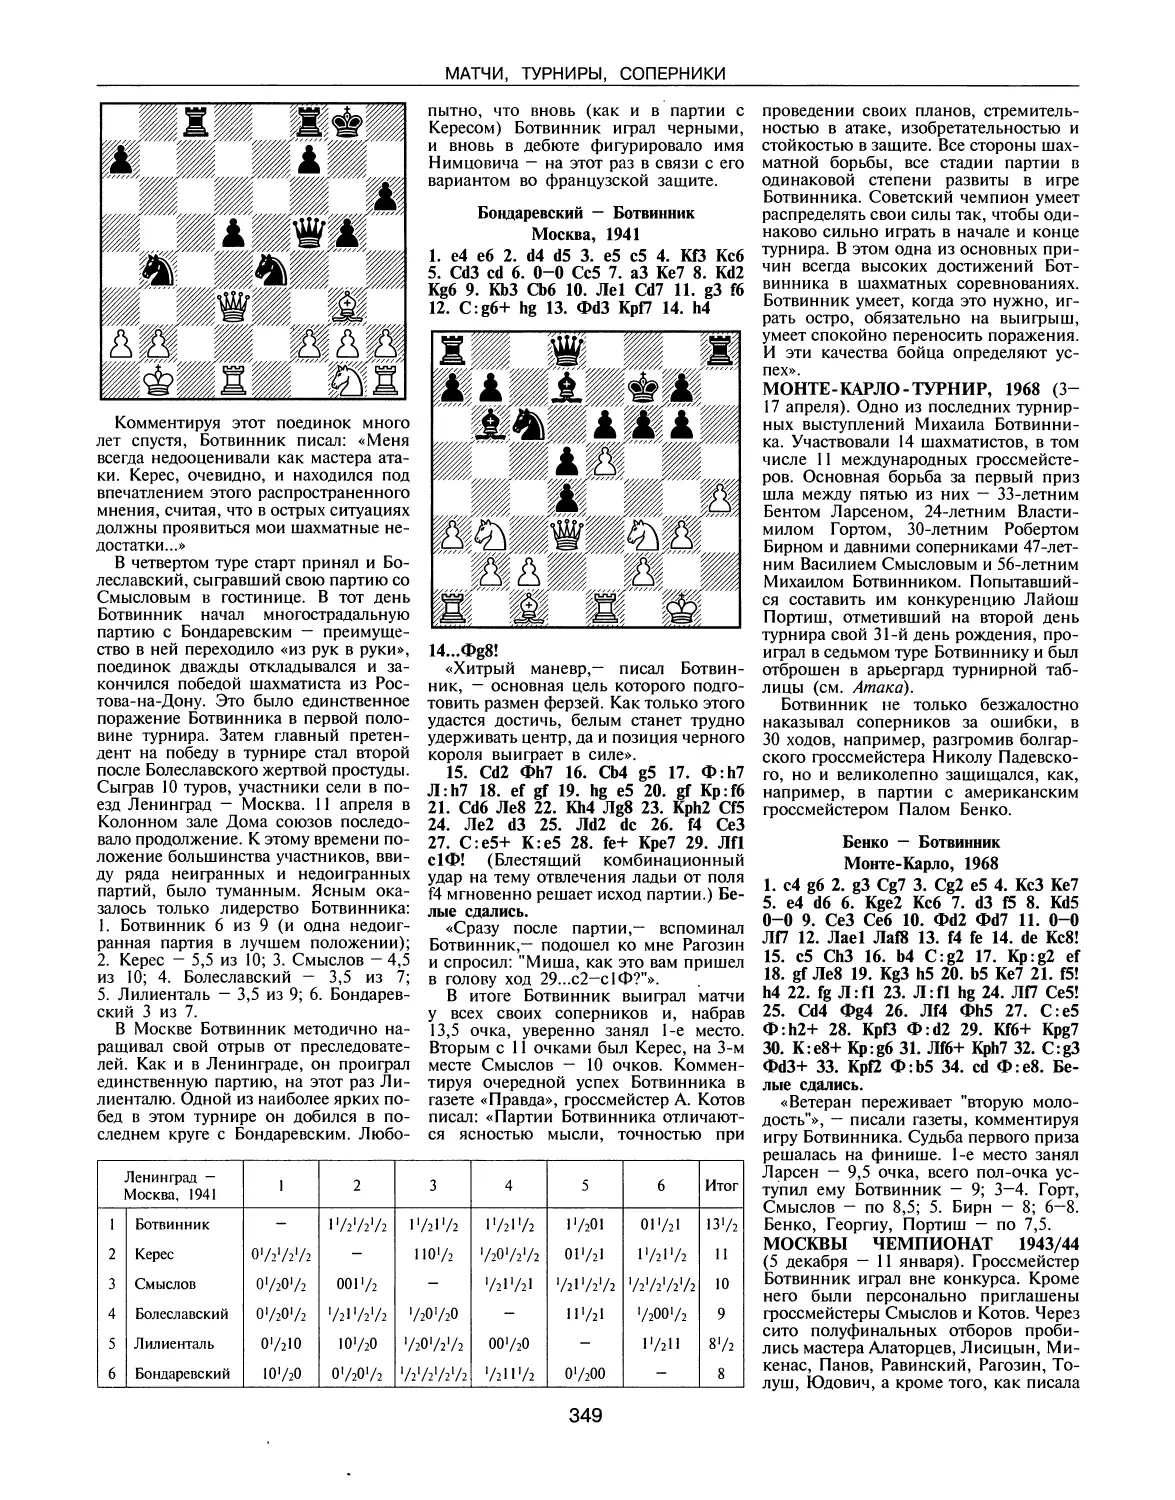 Монте-Карло-турнир, 1968
Москвы чемпионат, 1943/44